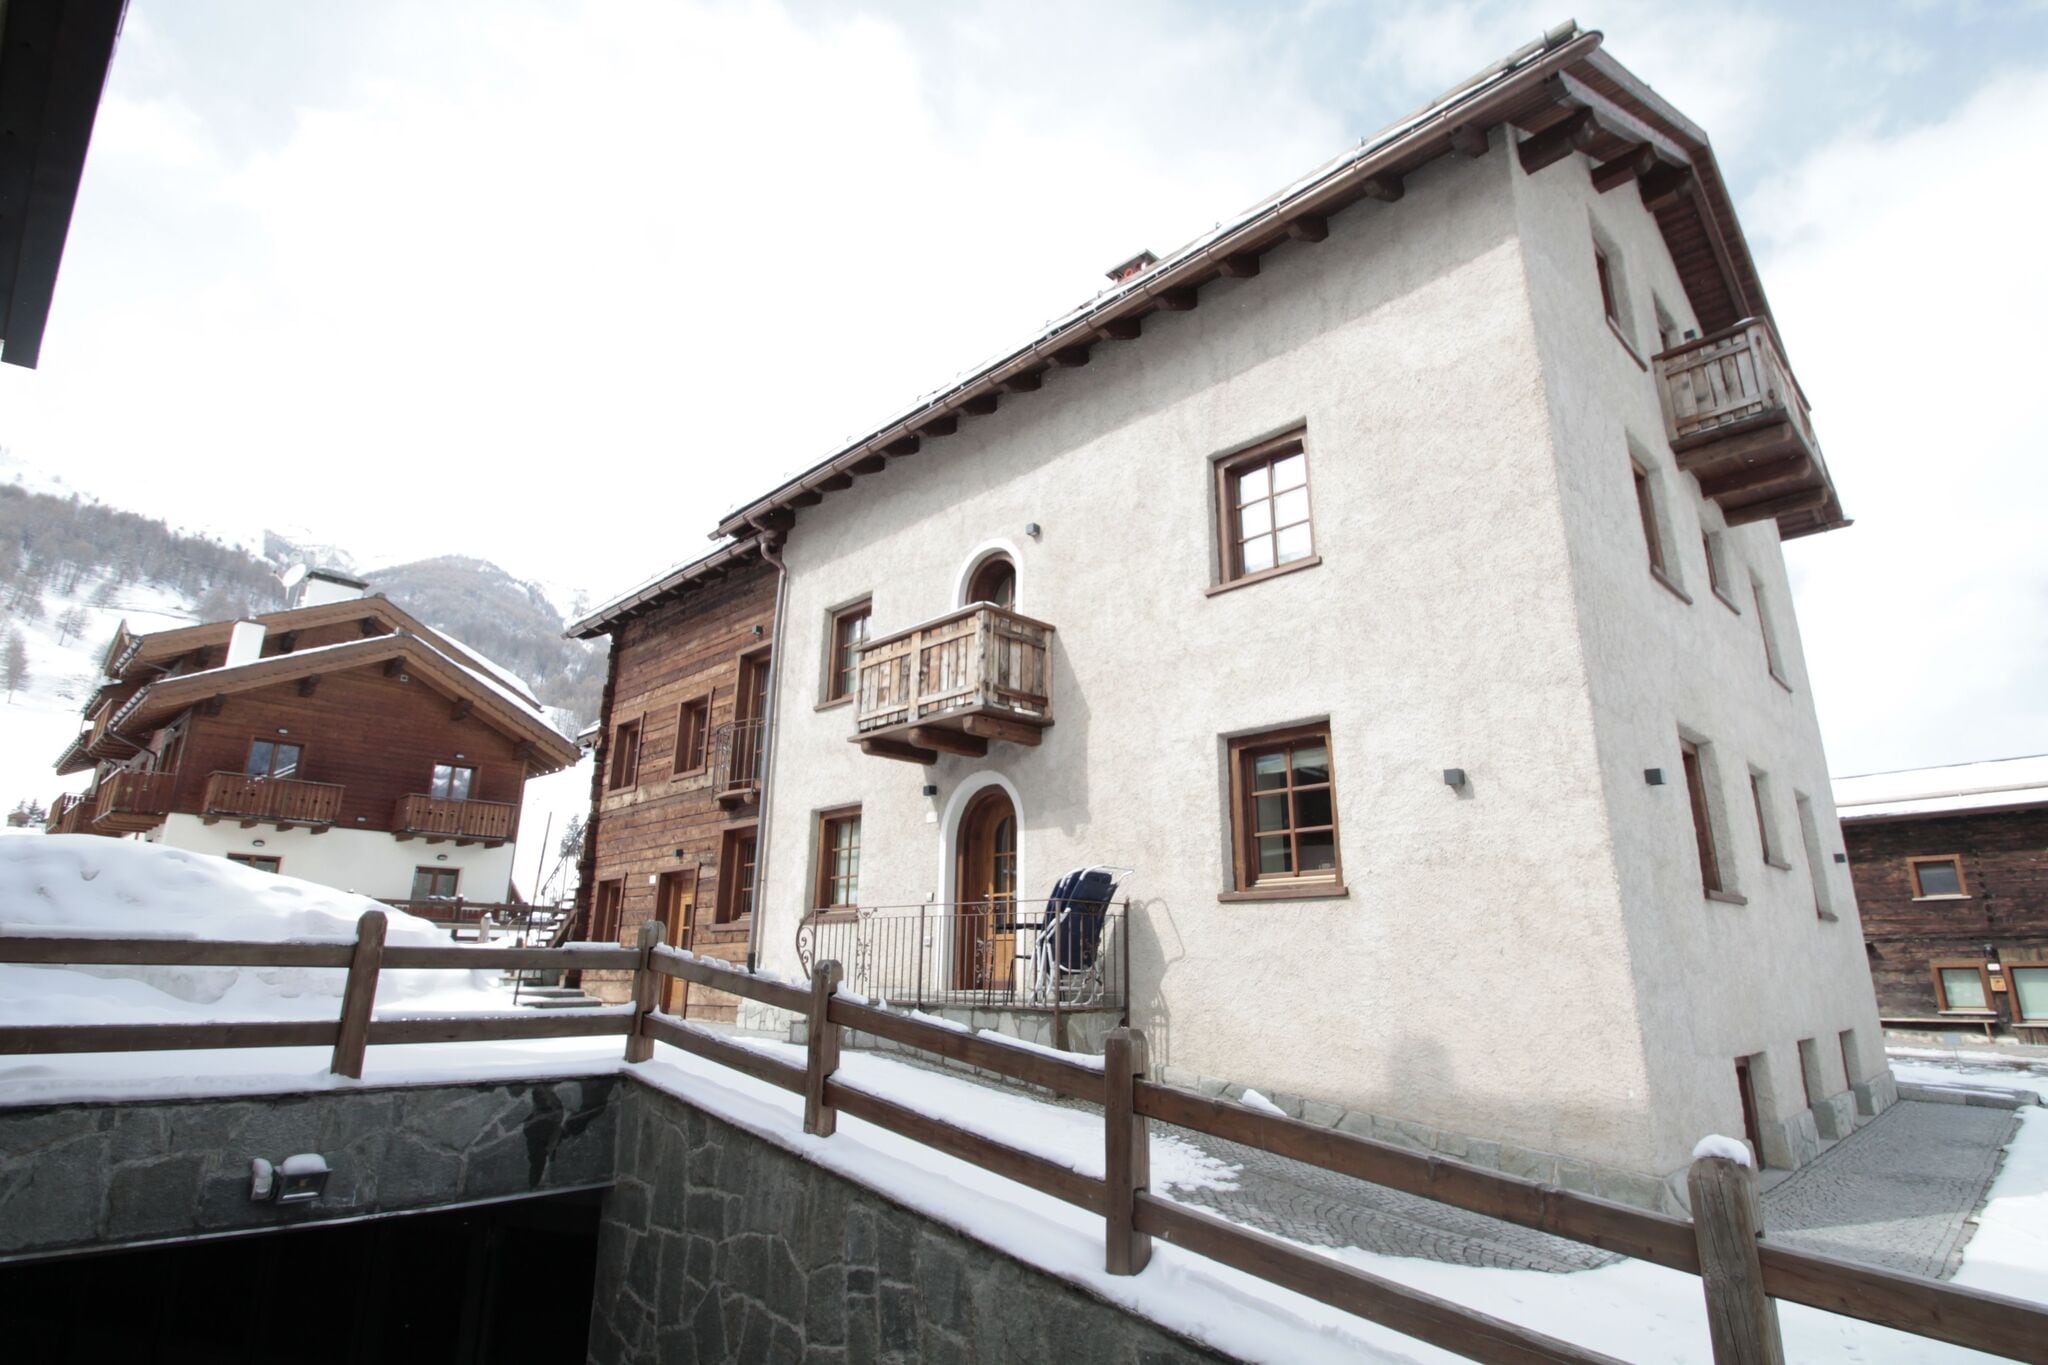 Brandneue Wohnung in Livigno, in der Nähe des Skigebiets